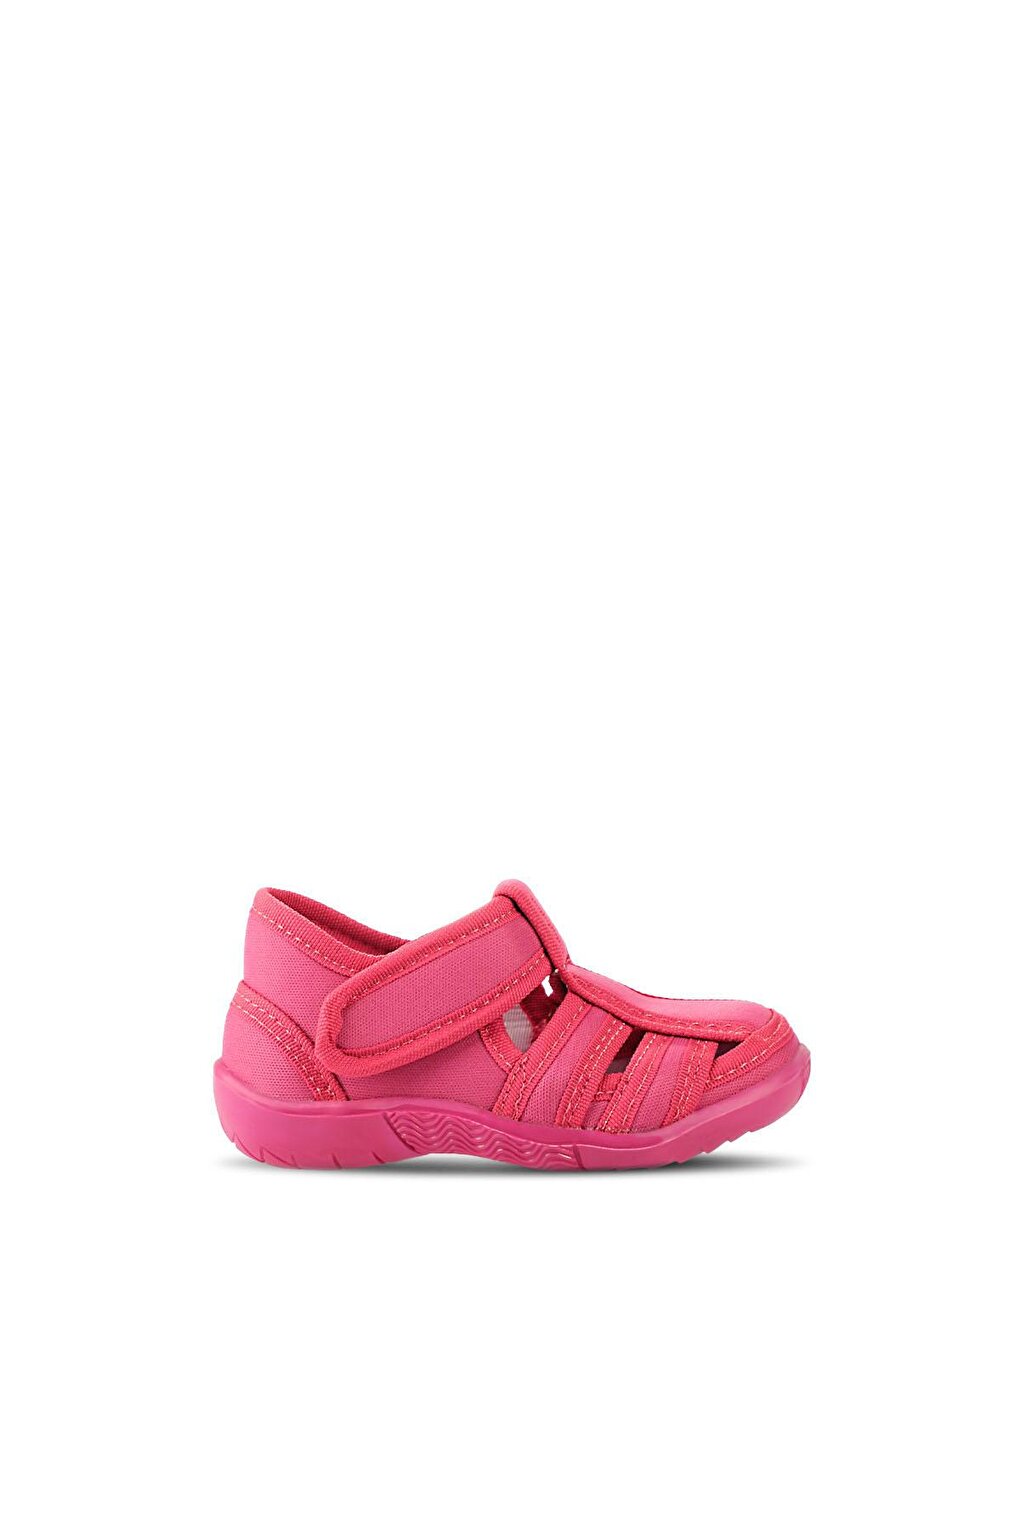 UZZY Спортивная обувь для девочек Фуксия SLAZENGER